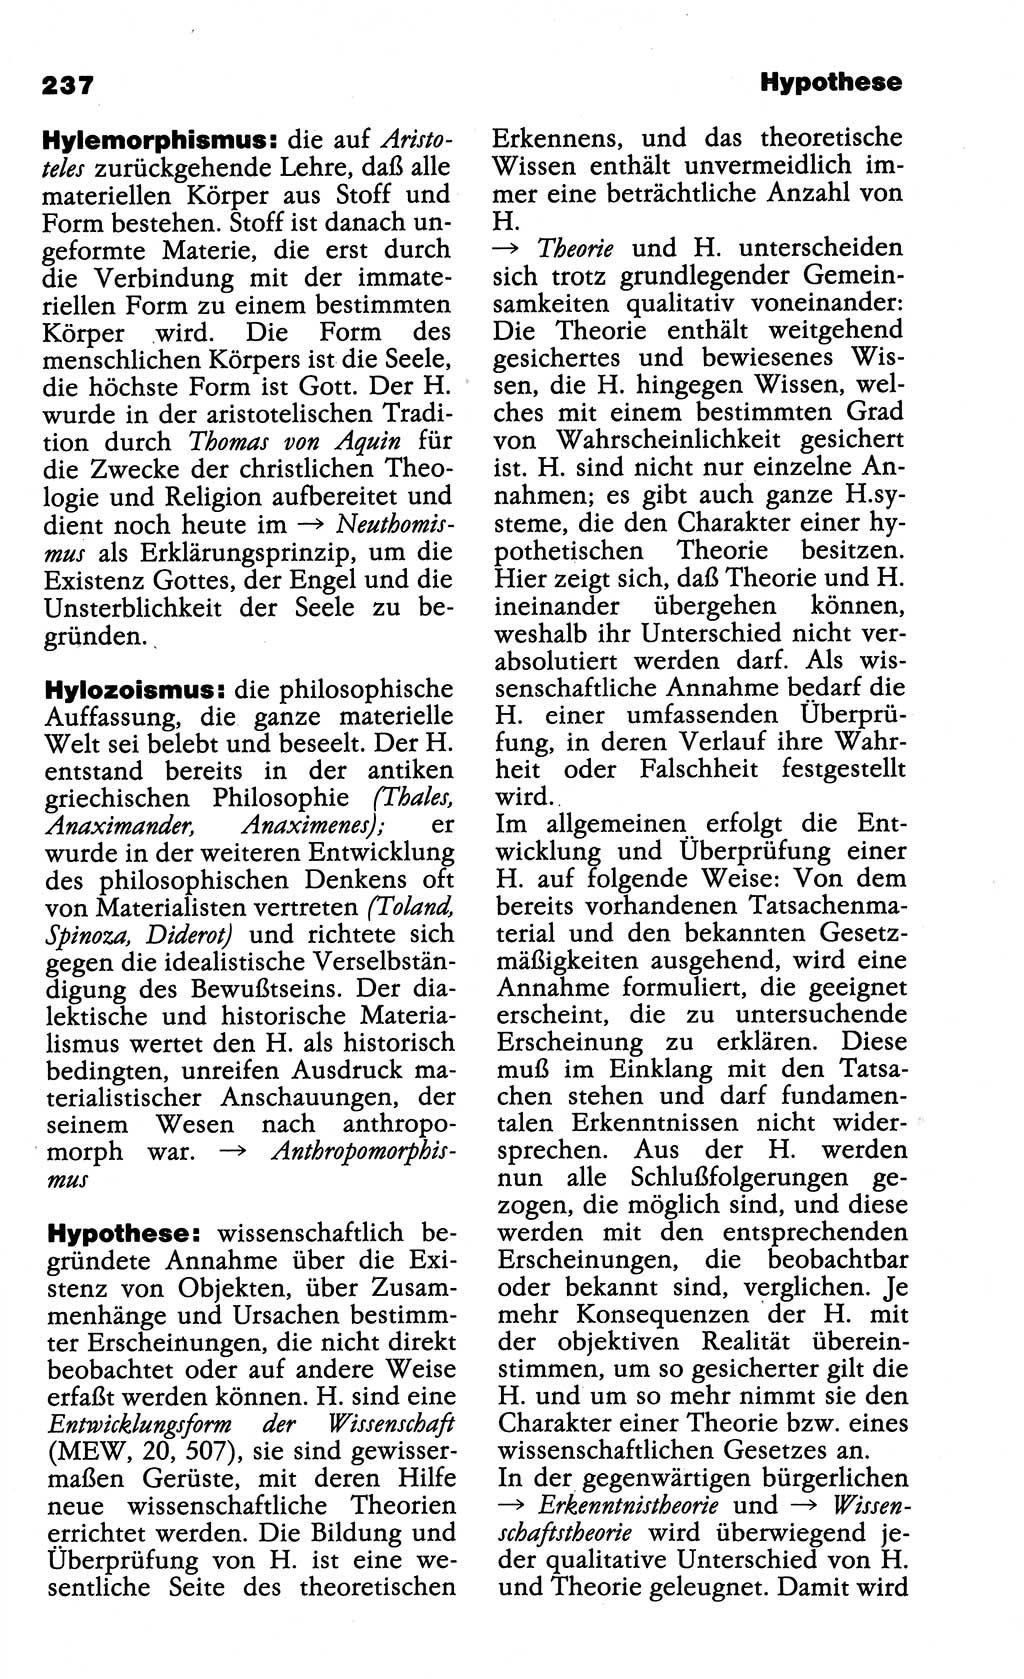 Wörterbuch der marxistisch-leninistischen Philosophie [Deutsche Demokratische Republik (DDR)] 1985, Seite 237 (Wb. ML Phil. DDR 1985, S. 237)